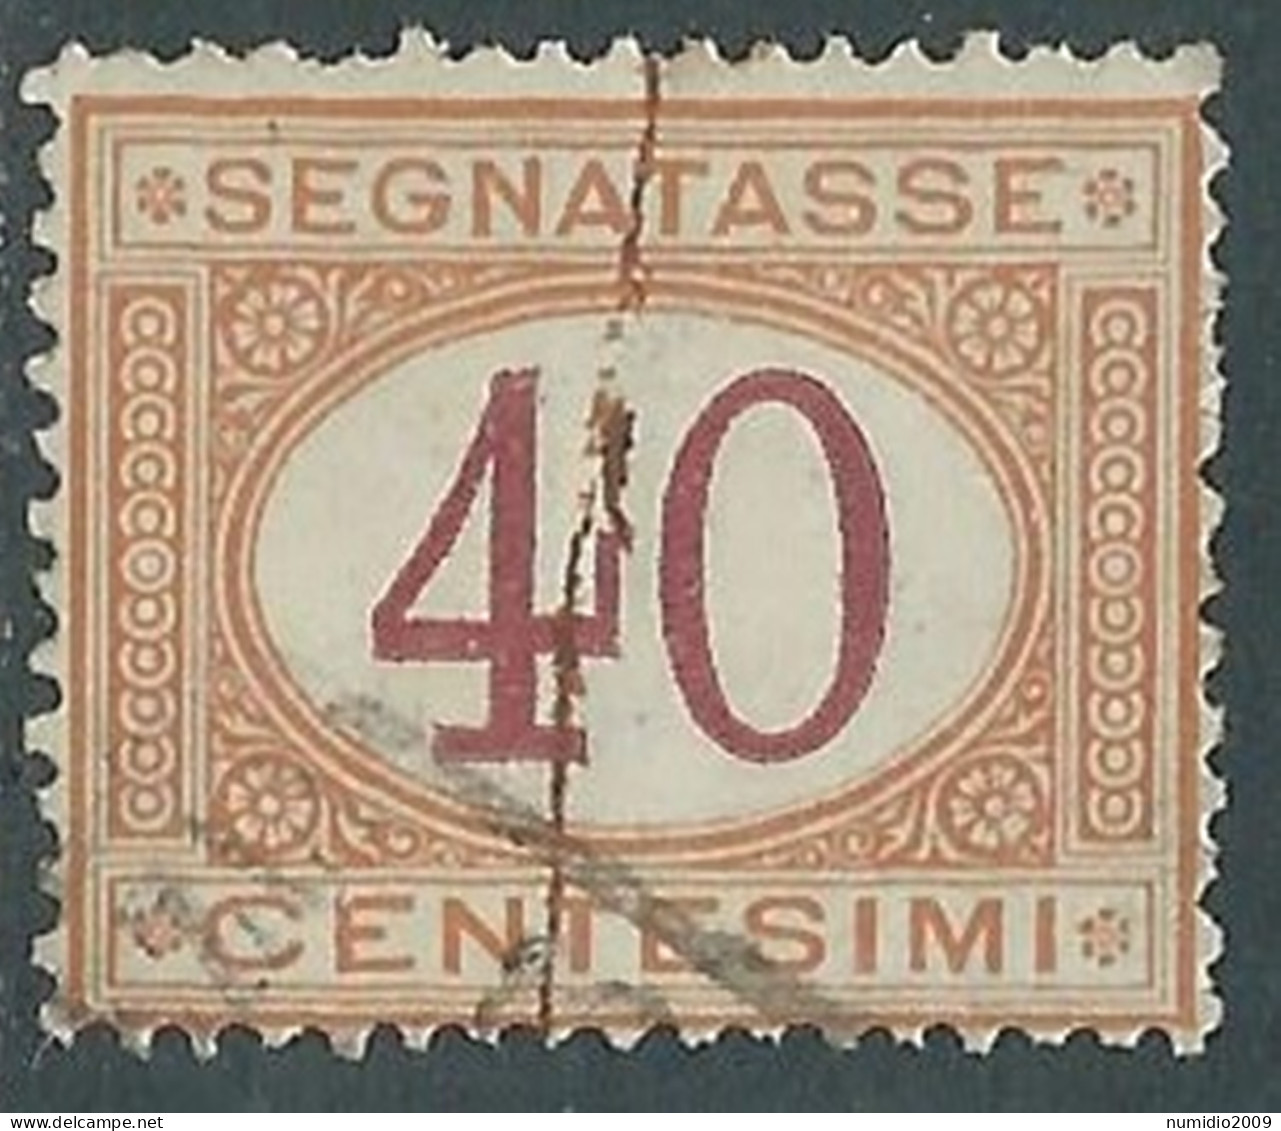 1890-94 REGNO SEGNATASSE USATO 40 CENT VARIETà RIGA COLORE - RC33 - Taxe